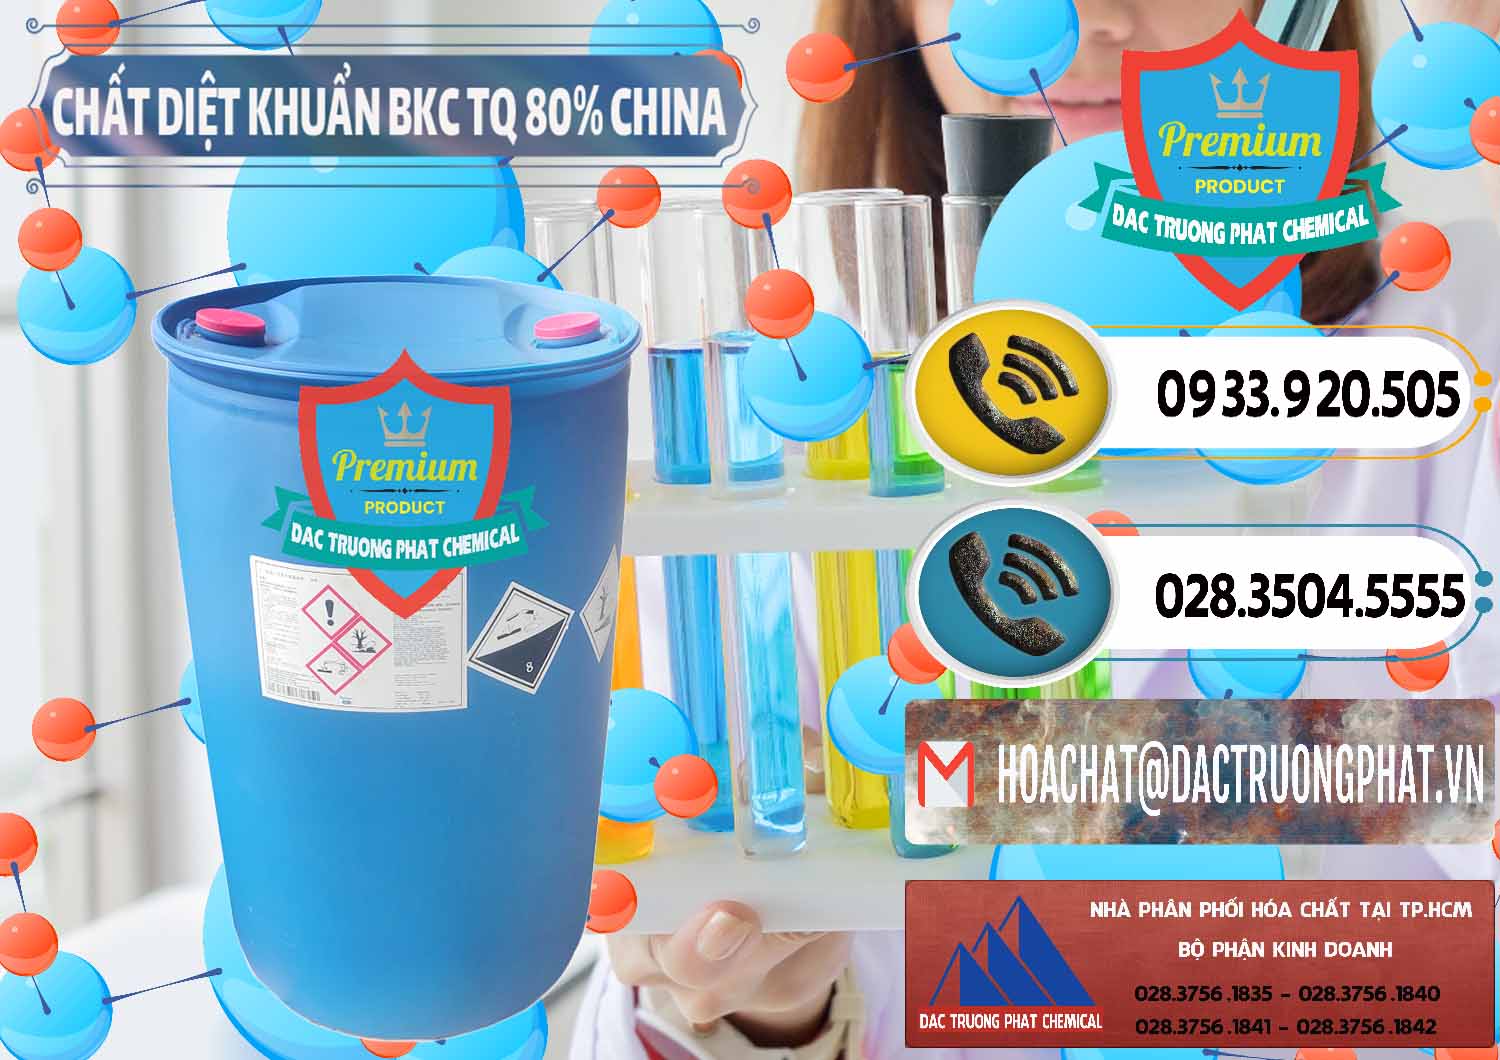 Đơn vị chuyên kinh doanh _ bán BKC - Benzalkonium Chloride 80% Trung Quốc China - 0310 - Phân phối và nhập khẩu hóa chất tại TP.HCM - hoachatdetnhuom.vn